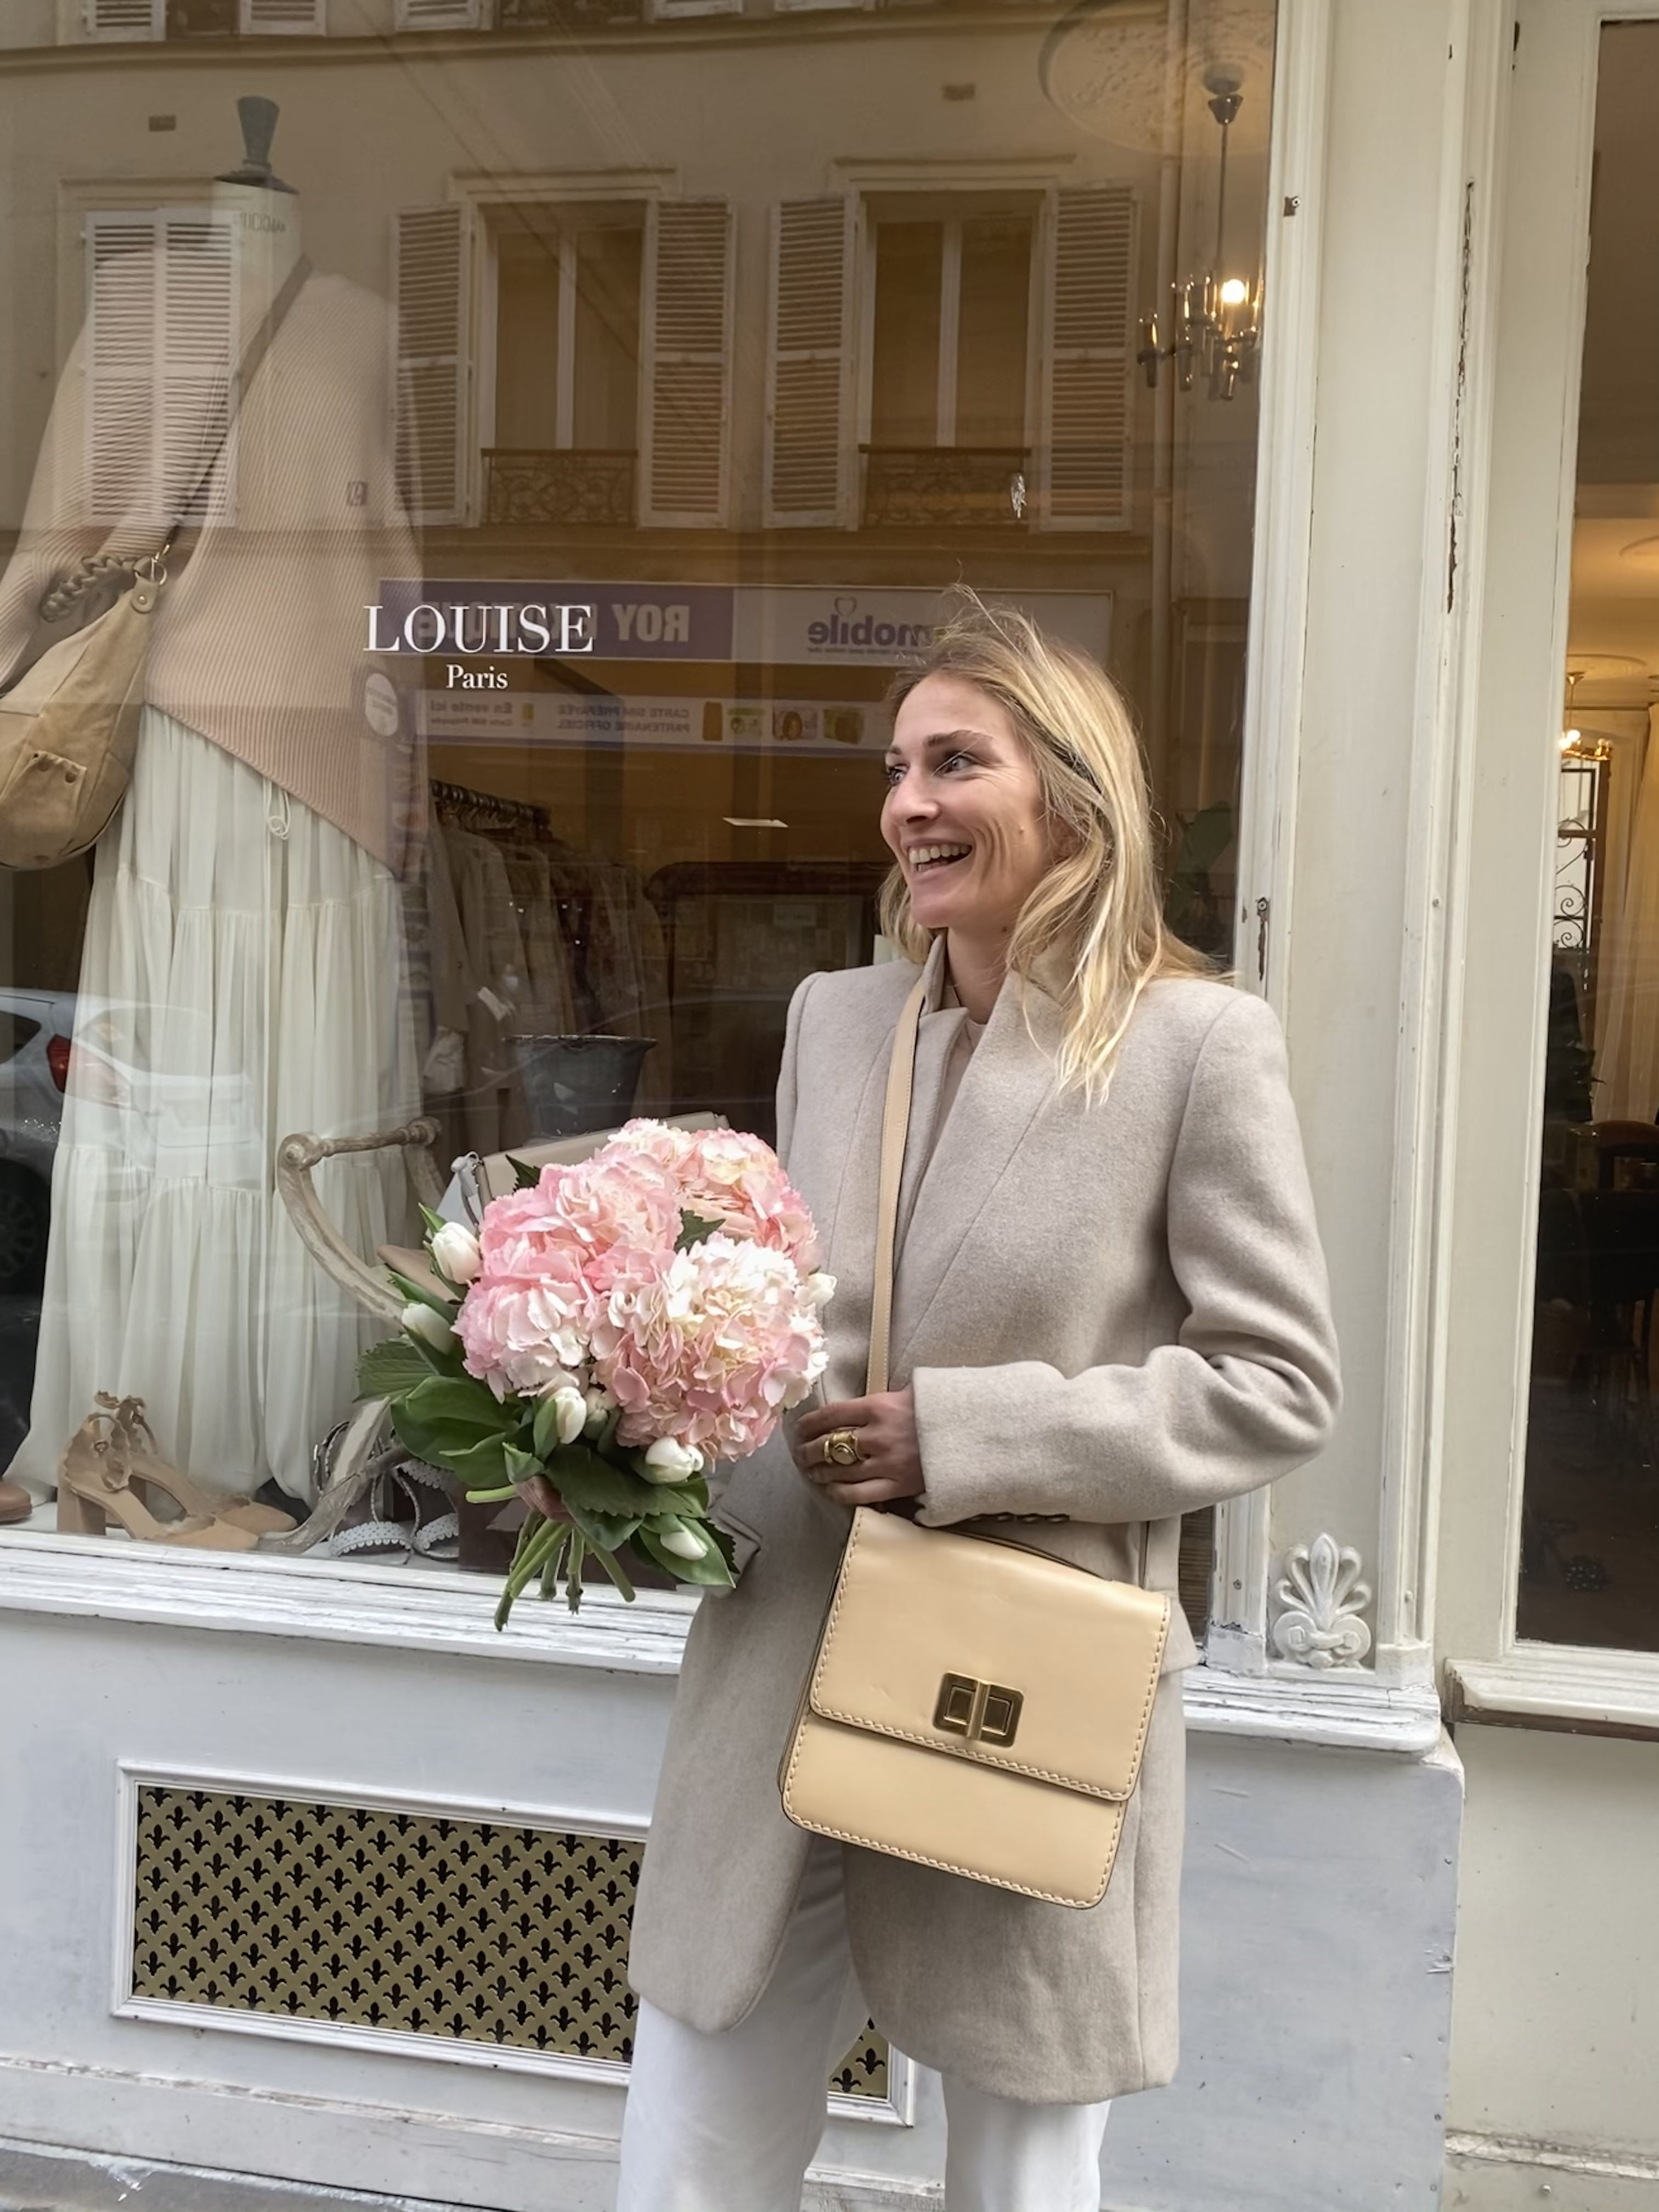 Boutique About us - Louise Paris